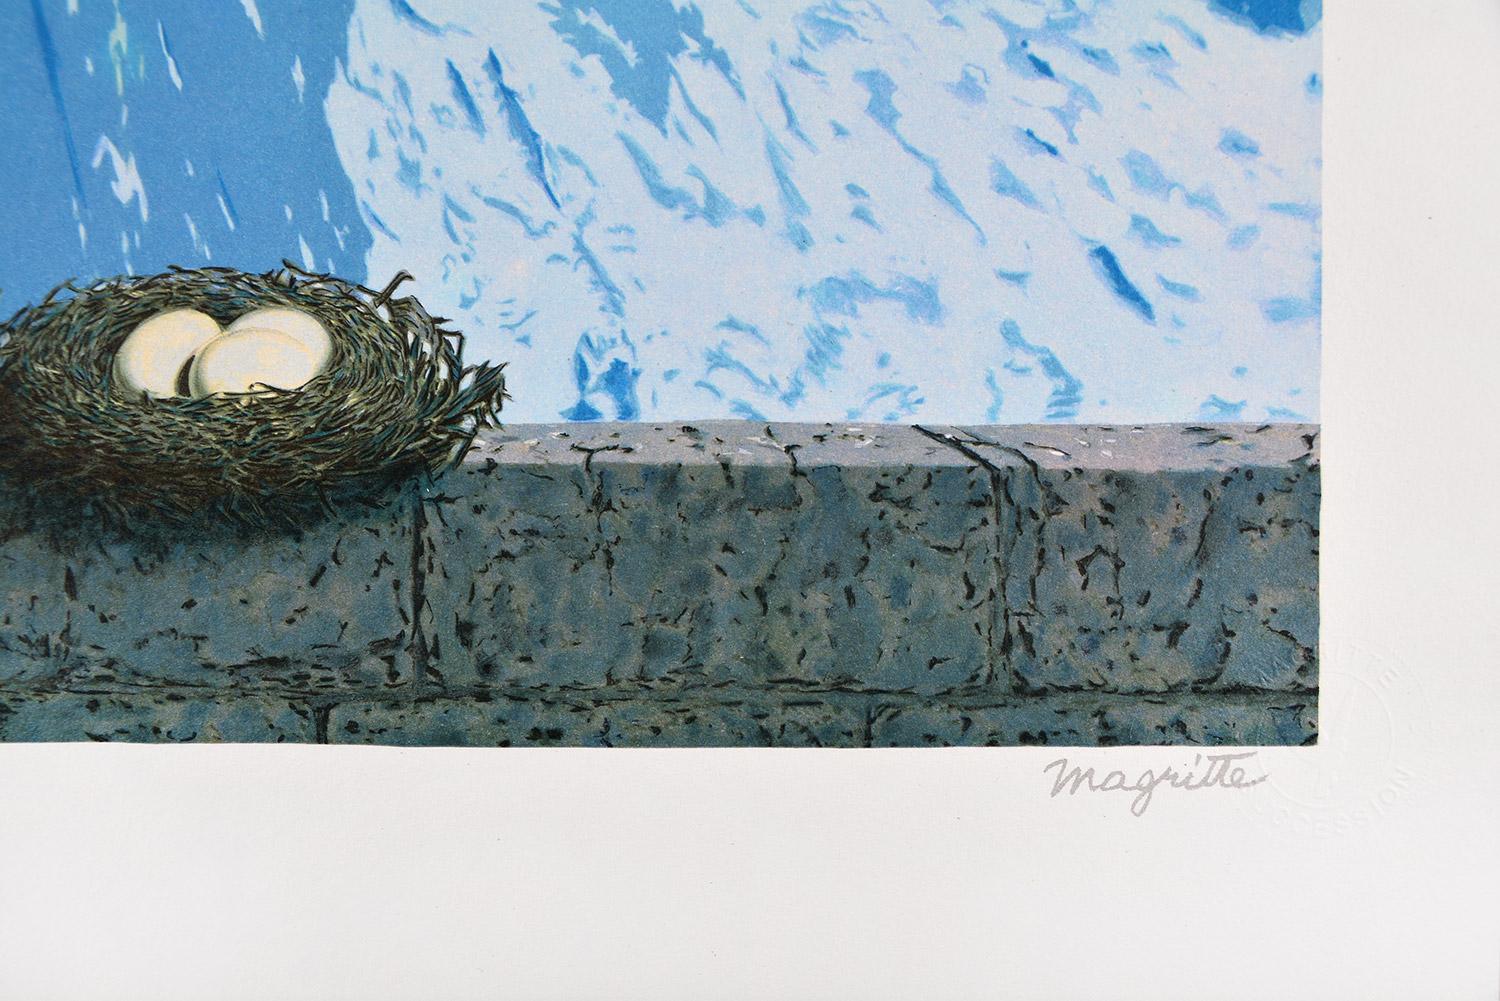 René Magritte - LE DOMAINE D'ARNHEIM, 1962 (LE DOMAINE D'ARNHEIM)
Date de création : 2010
Support : Lithographie sur papier BFK Rives
Numéro d'édition : 155/275
Taille : 60 x 45 cm
Condit : Nouveau, en parfait état et jamais encadré
Observations :